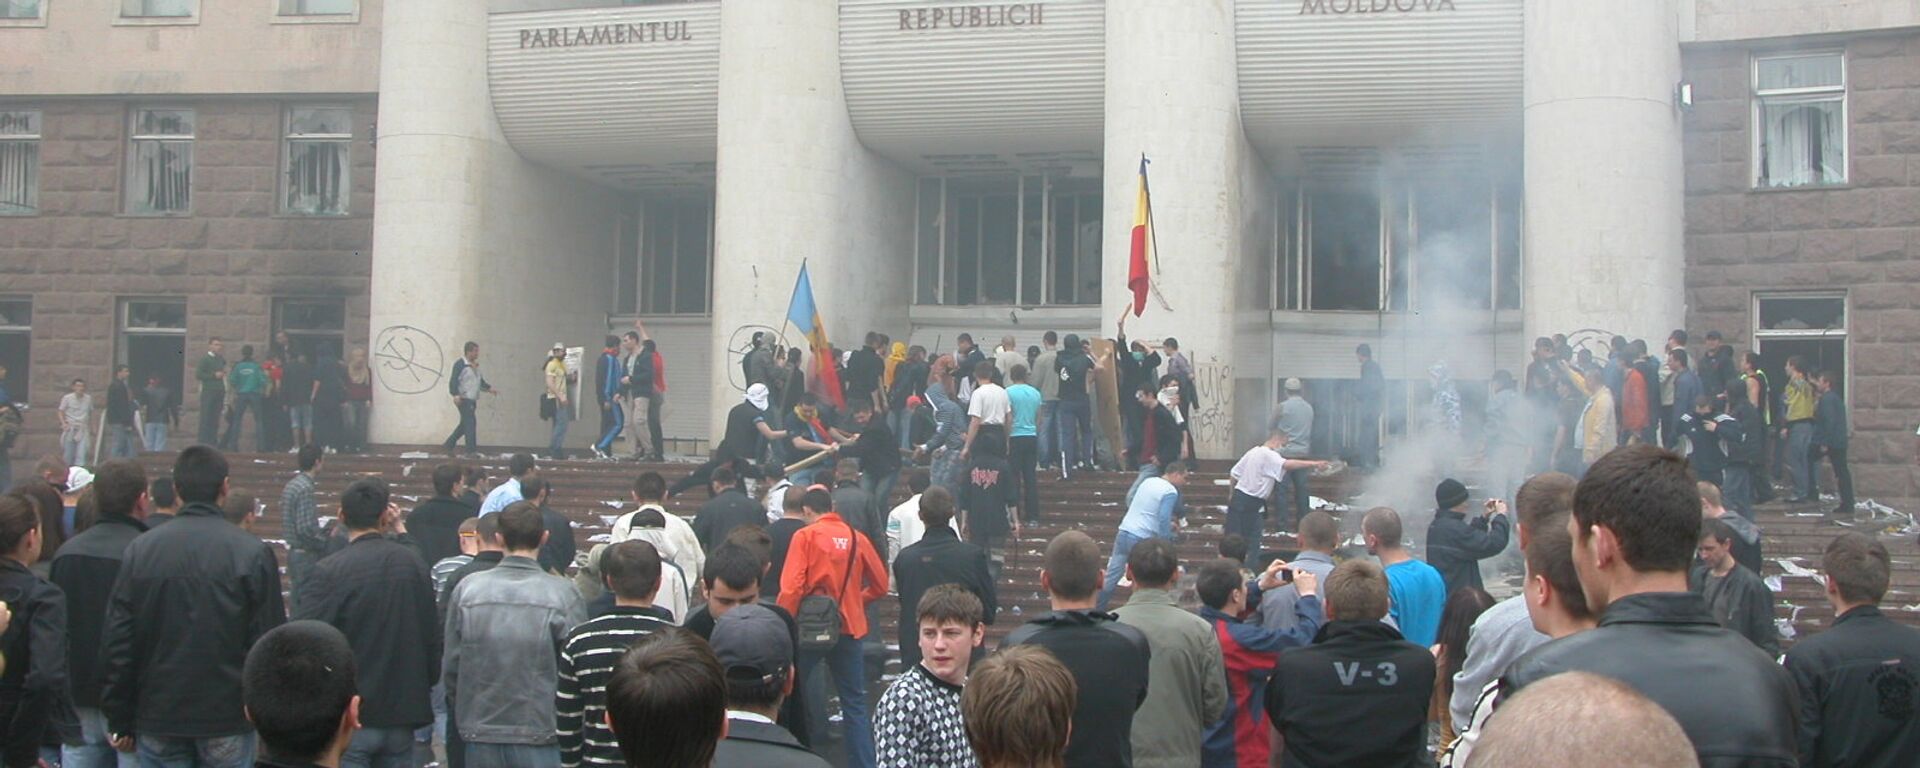 Беспорядки у парламента.Кишинев, события 7 апреля 2009 года. - Sputnik Moldova, 1920, 07.04.2021